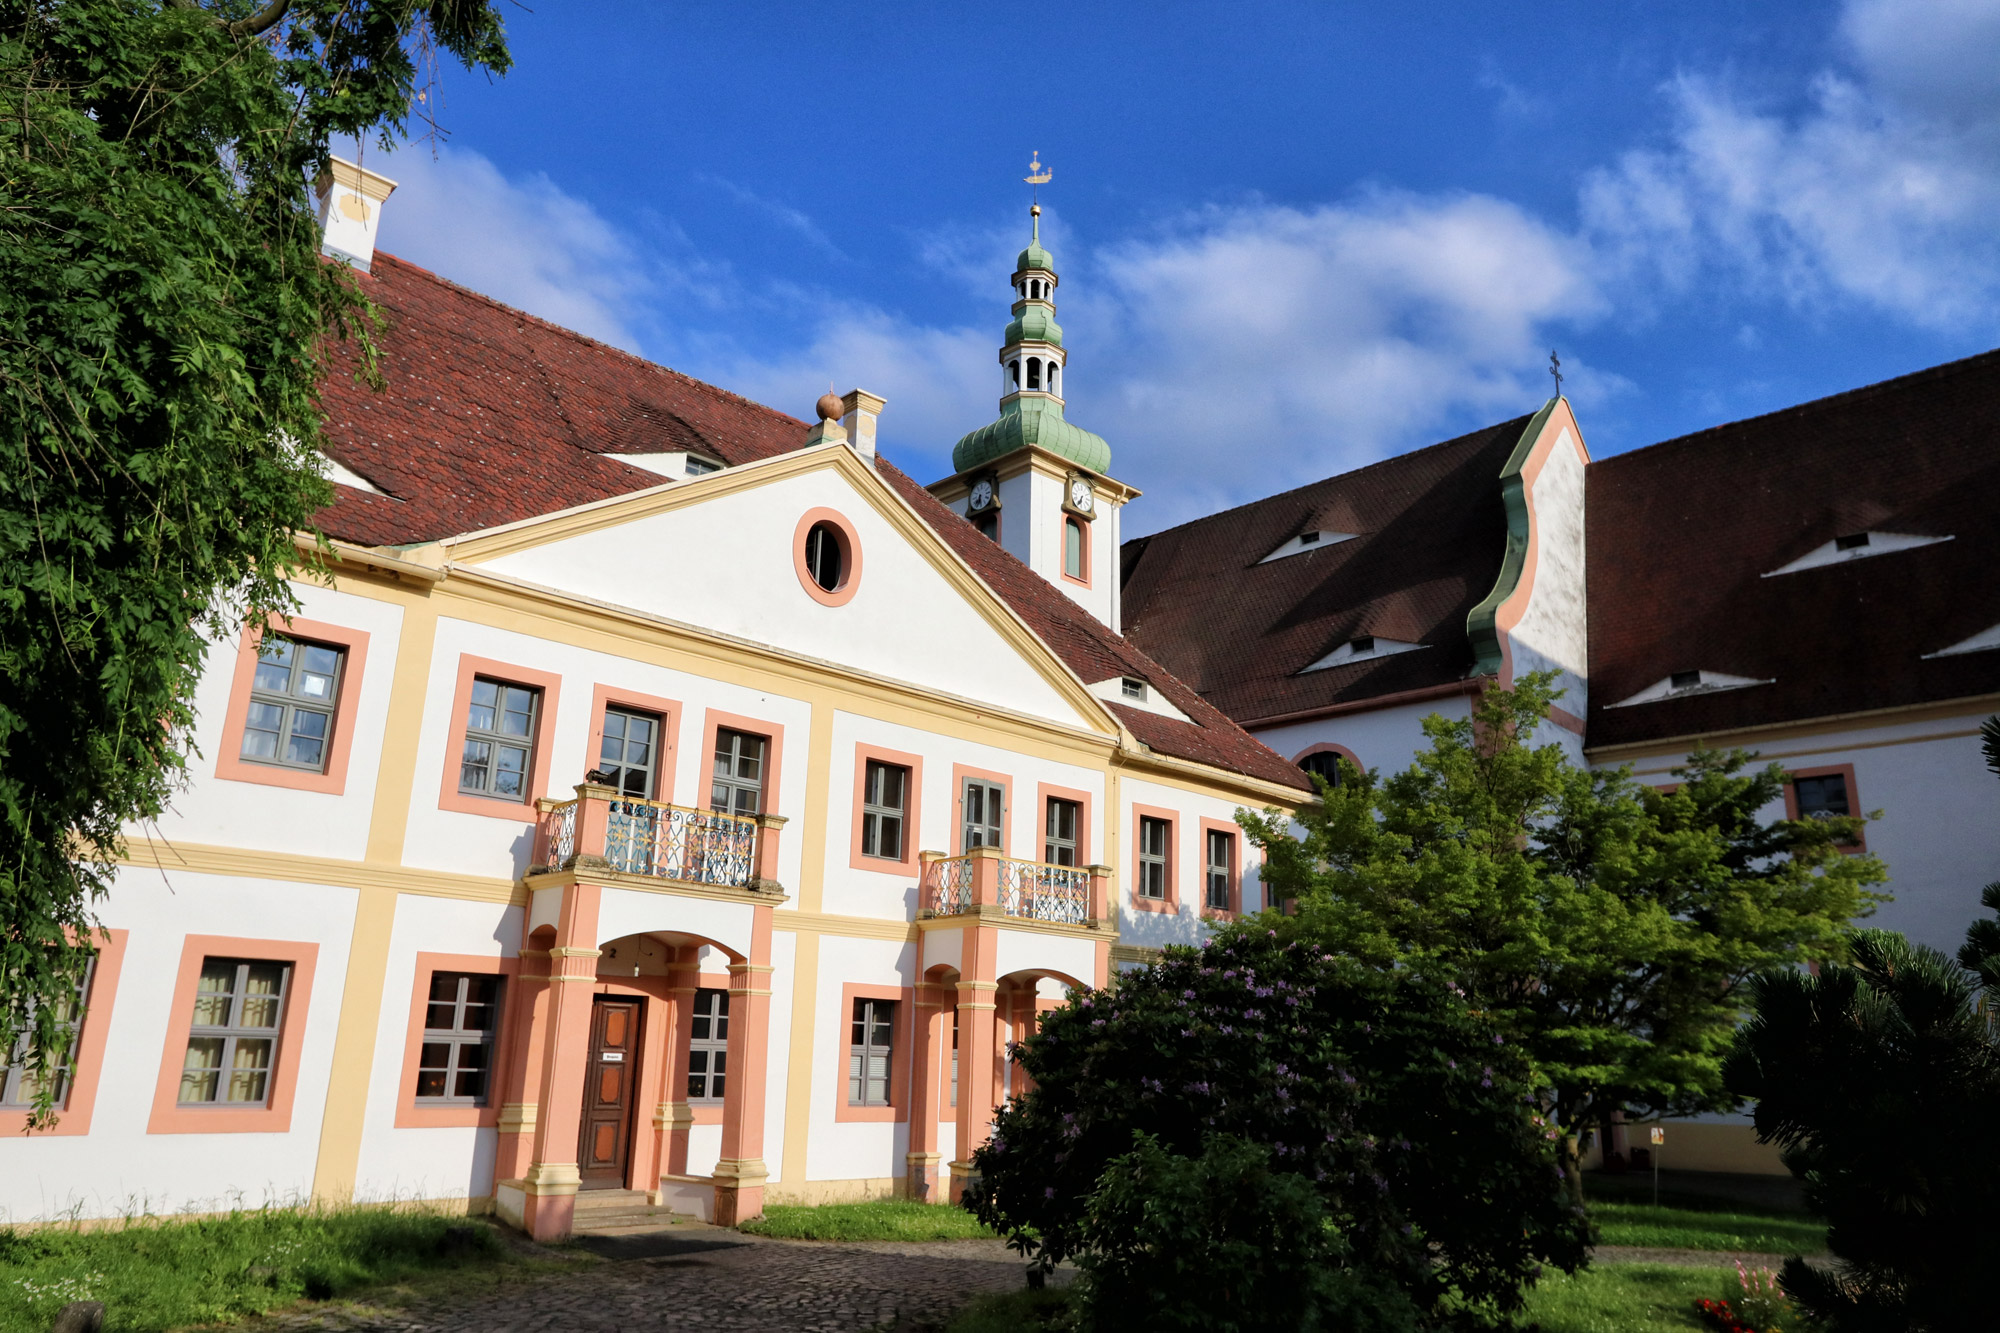 Kloster St. Marienthal, overnachten in een klooster